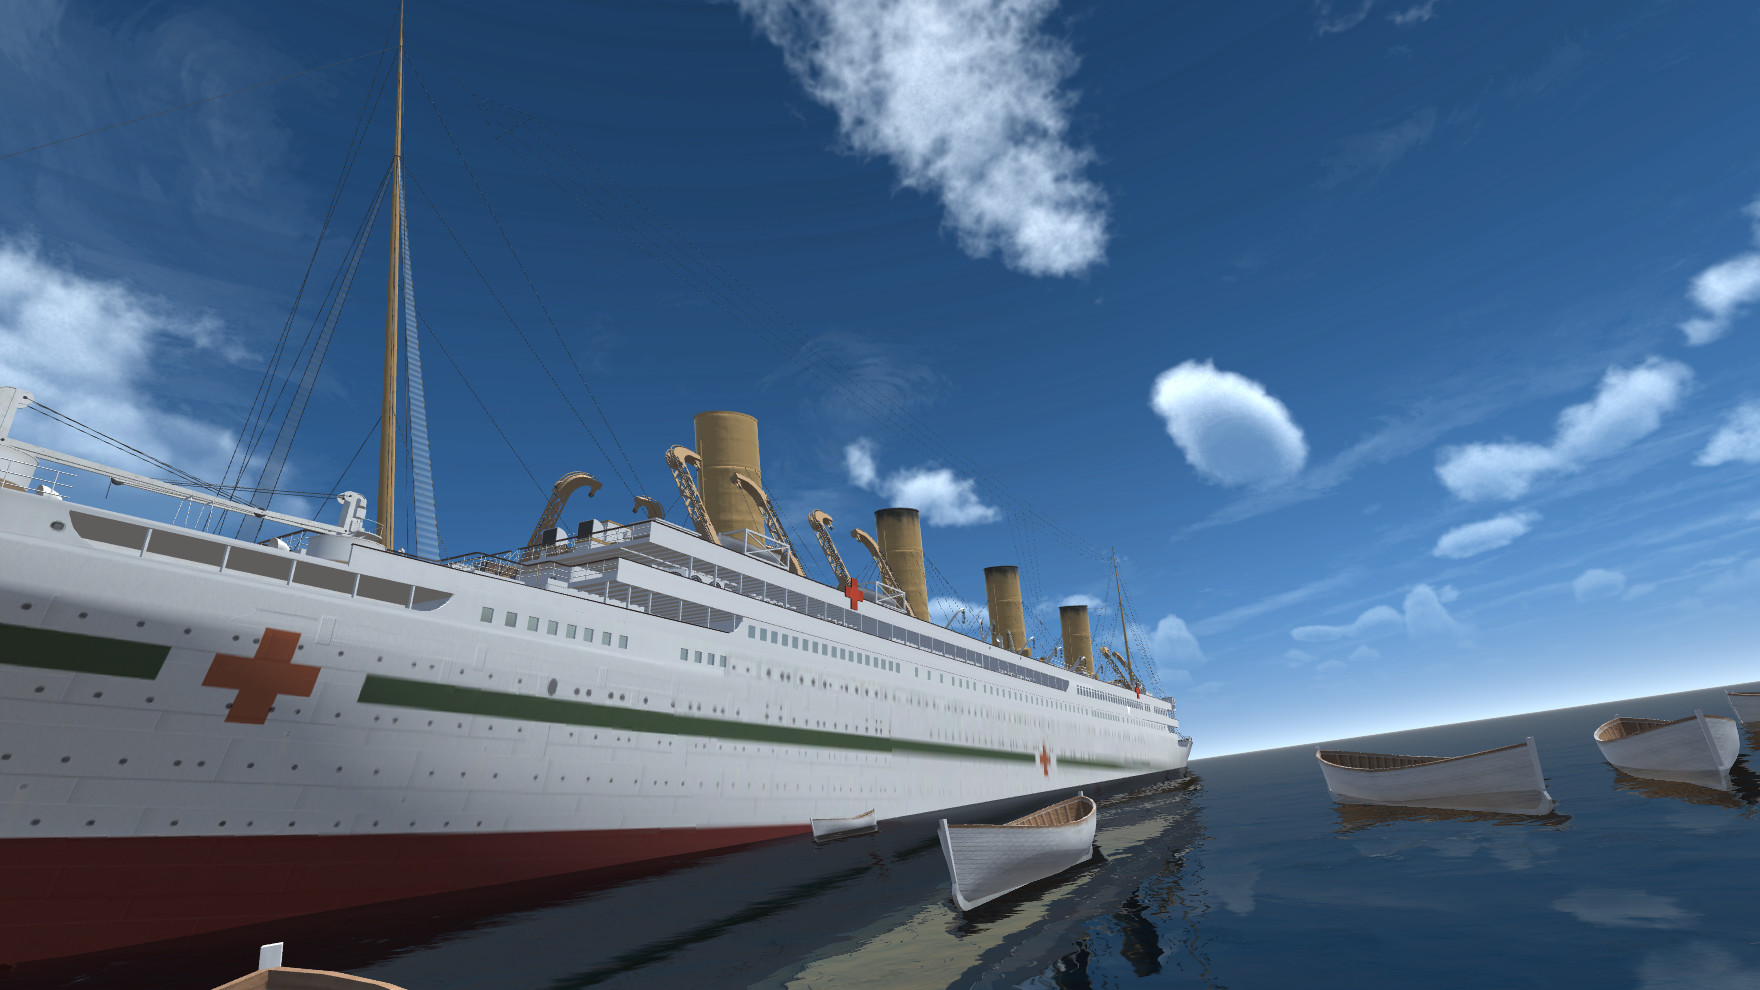 Britannic On Steam - roblox britannic sinking games free